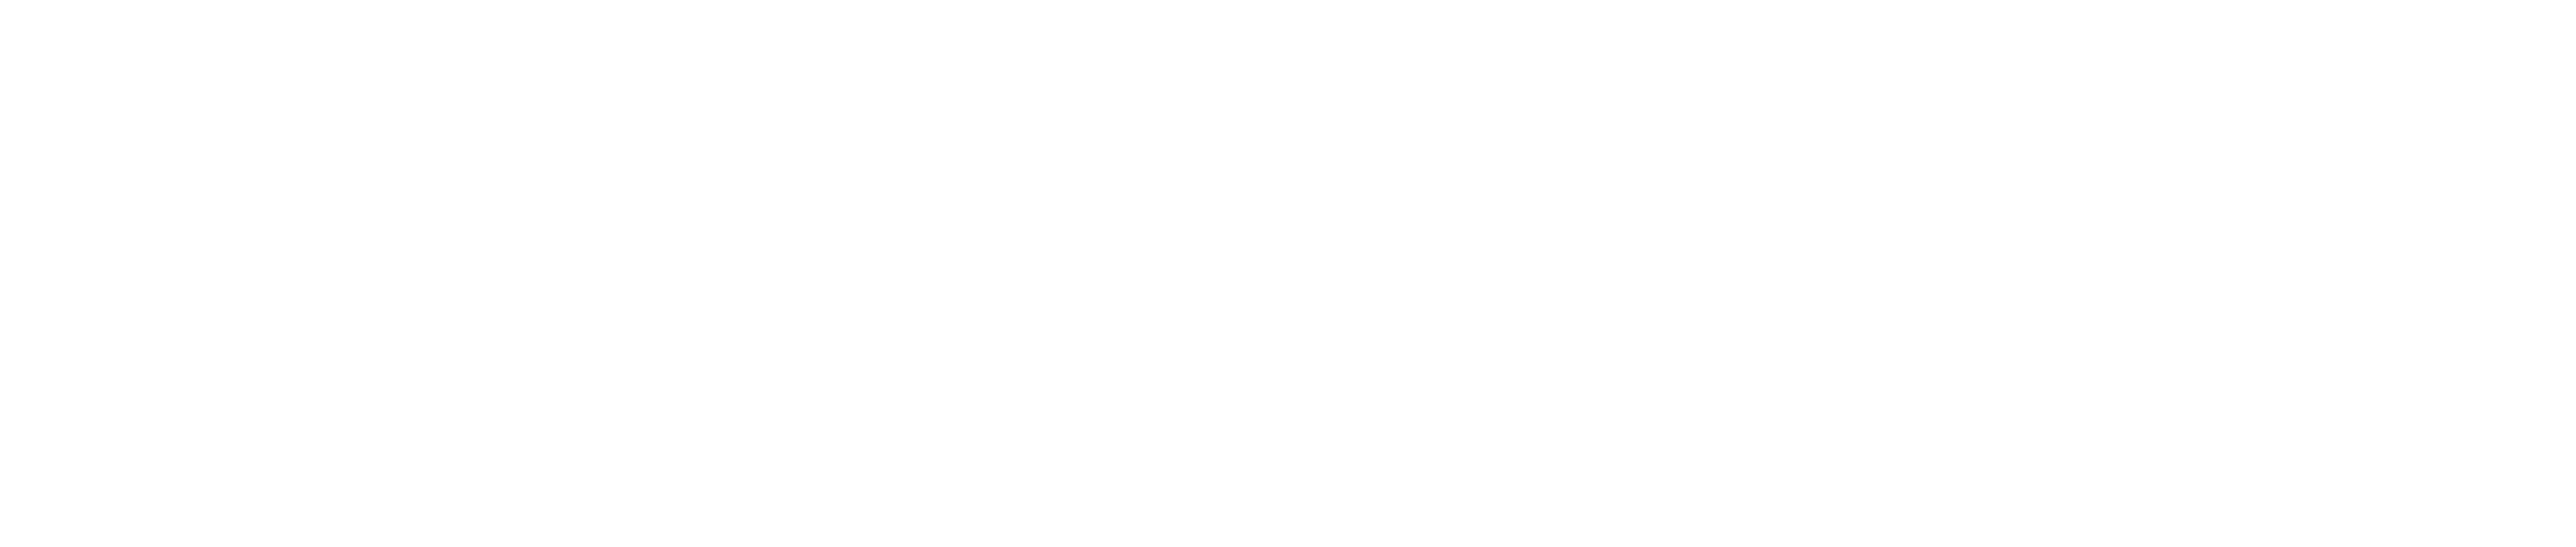 medicaltravelportal.com logo